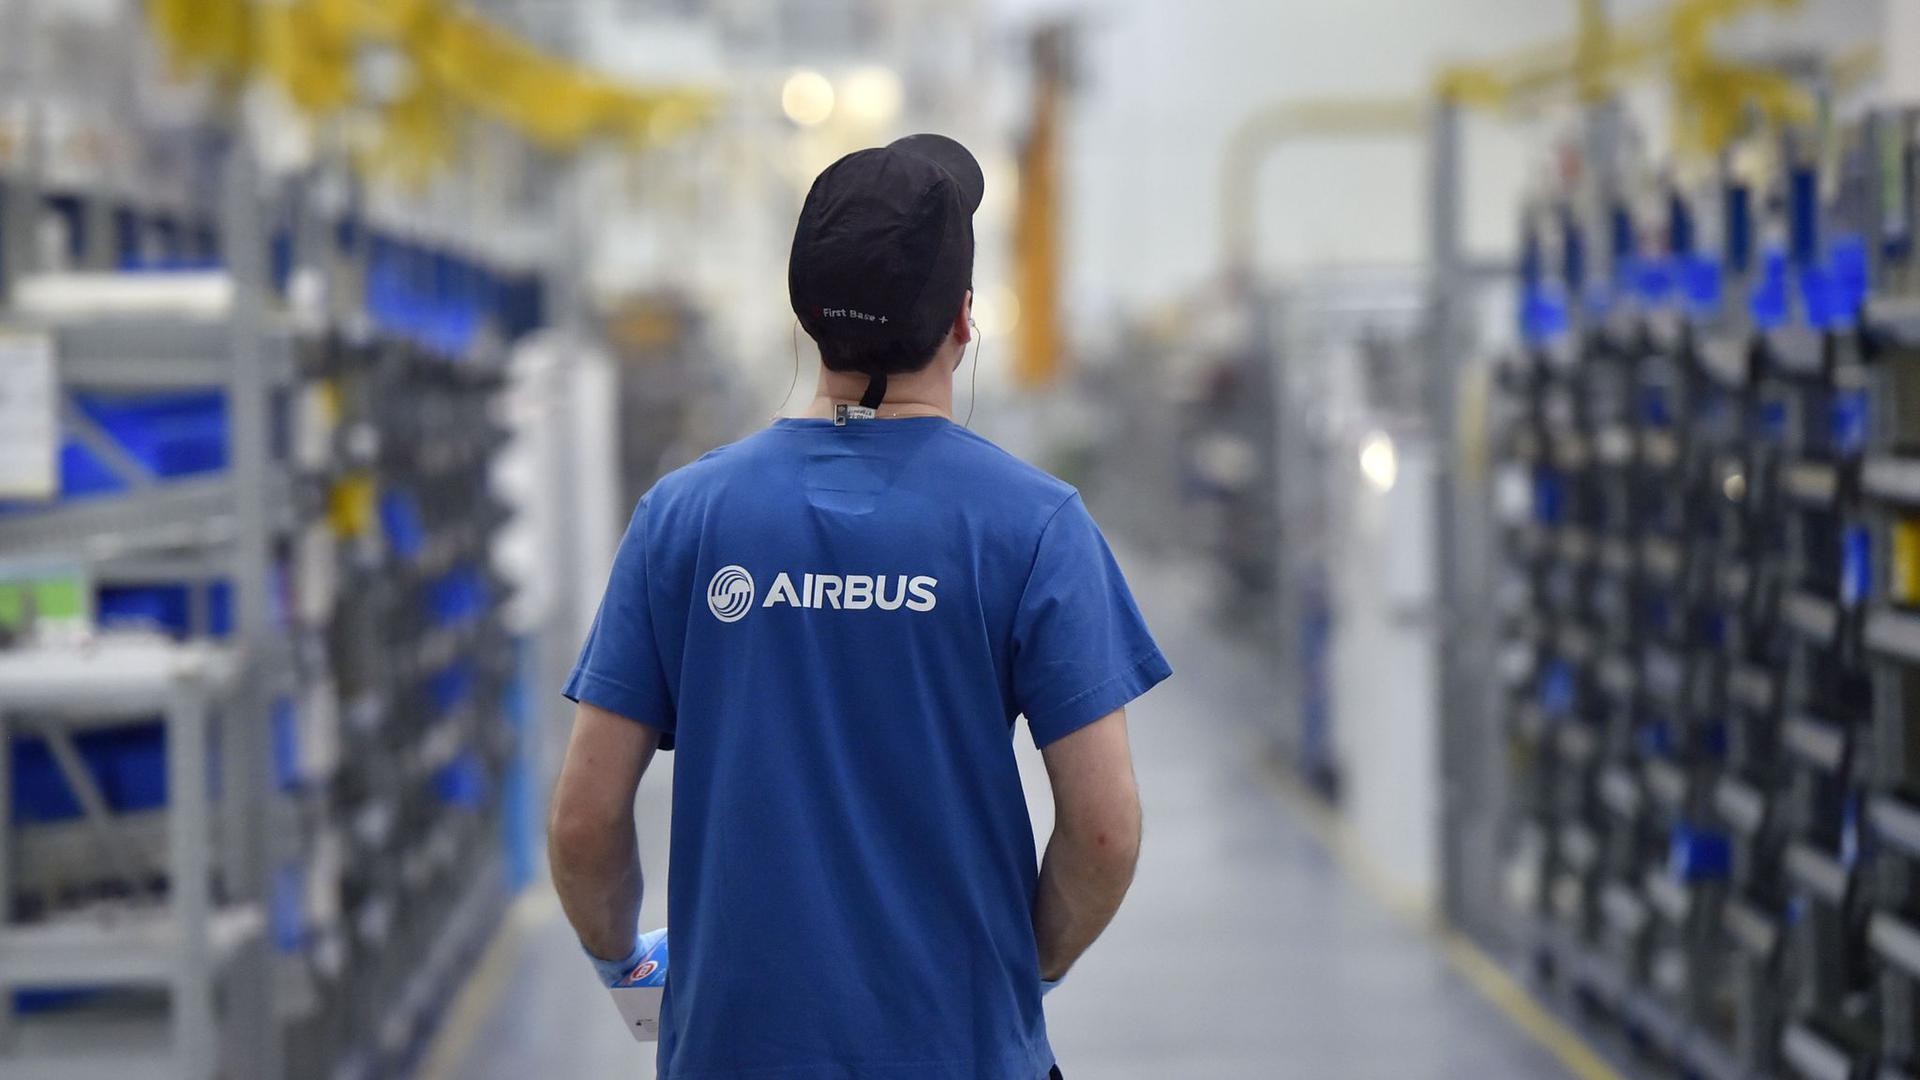 Ein Mitarbeiter des Flugzeugbauers Airbus arbeitet im Airbus-Werk im westfranzösischen Bouguenais.